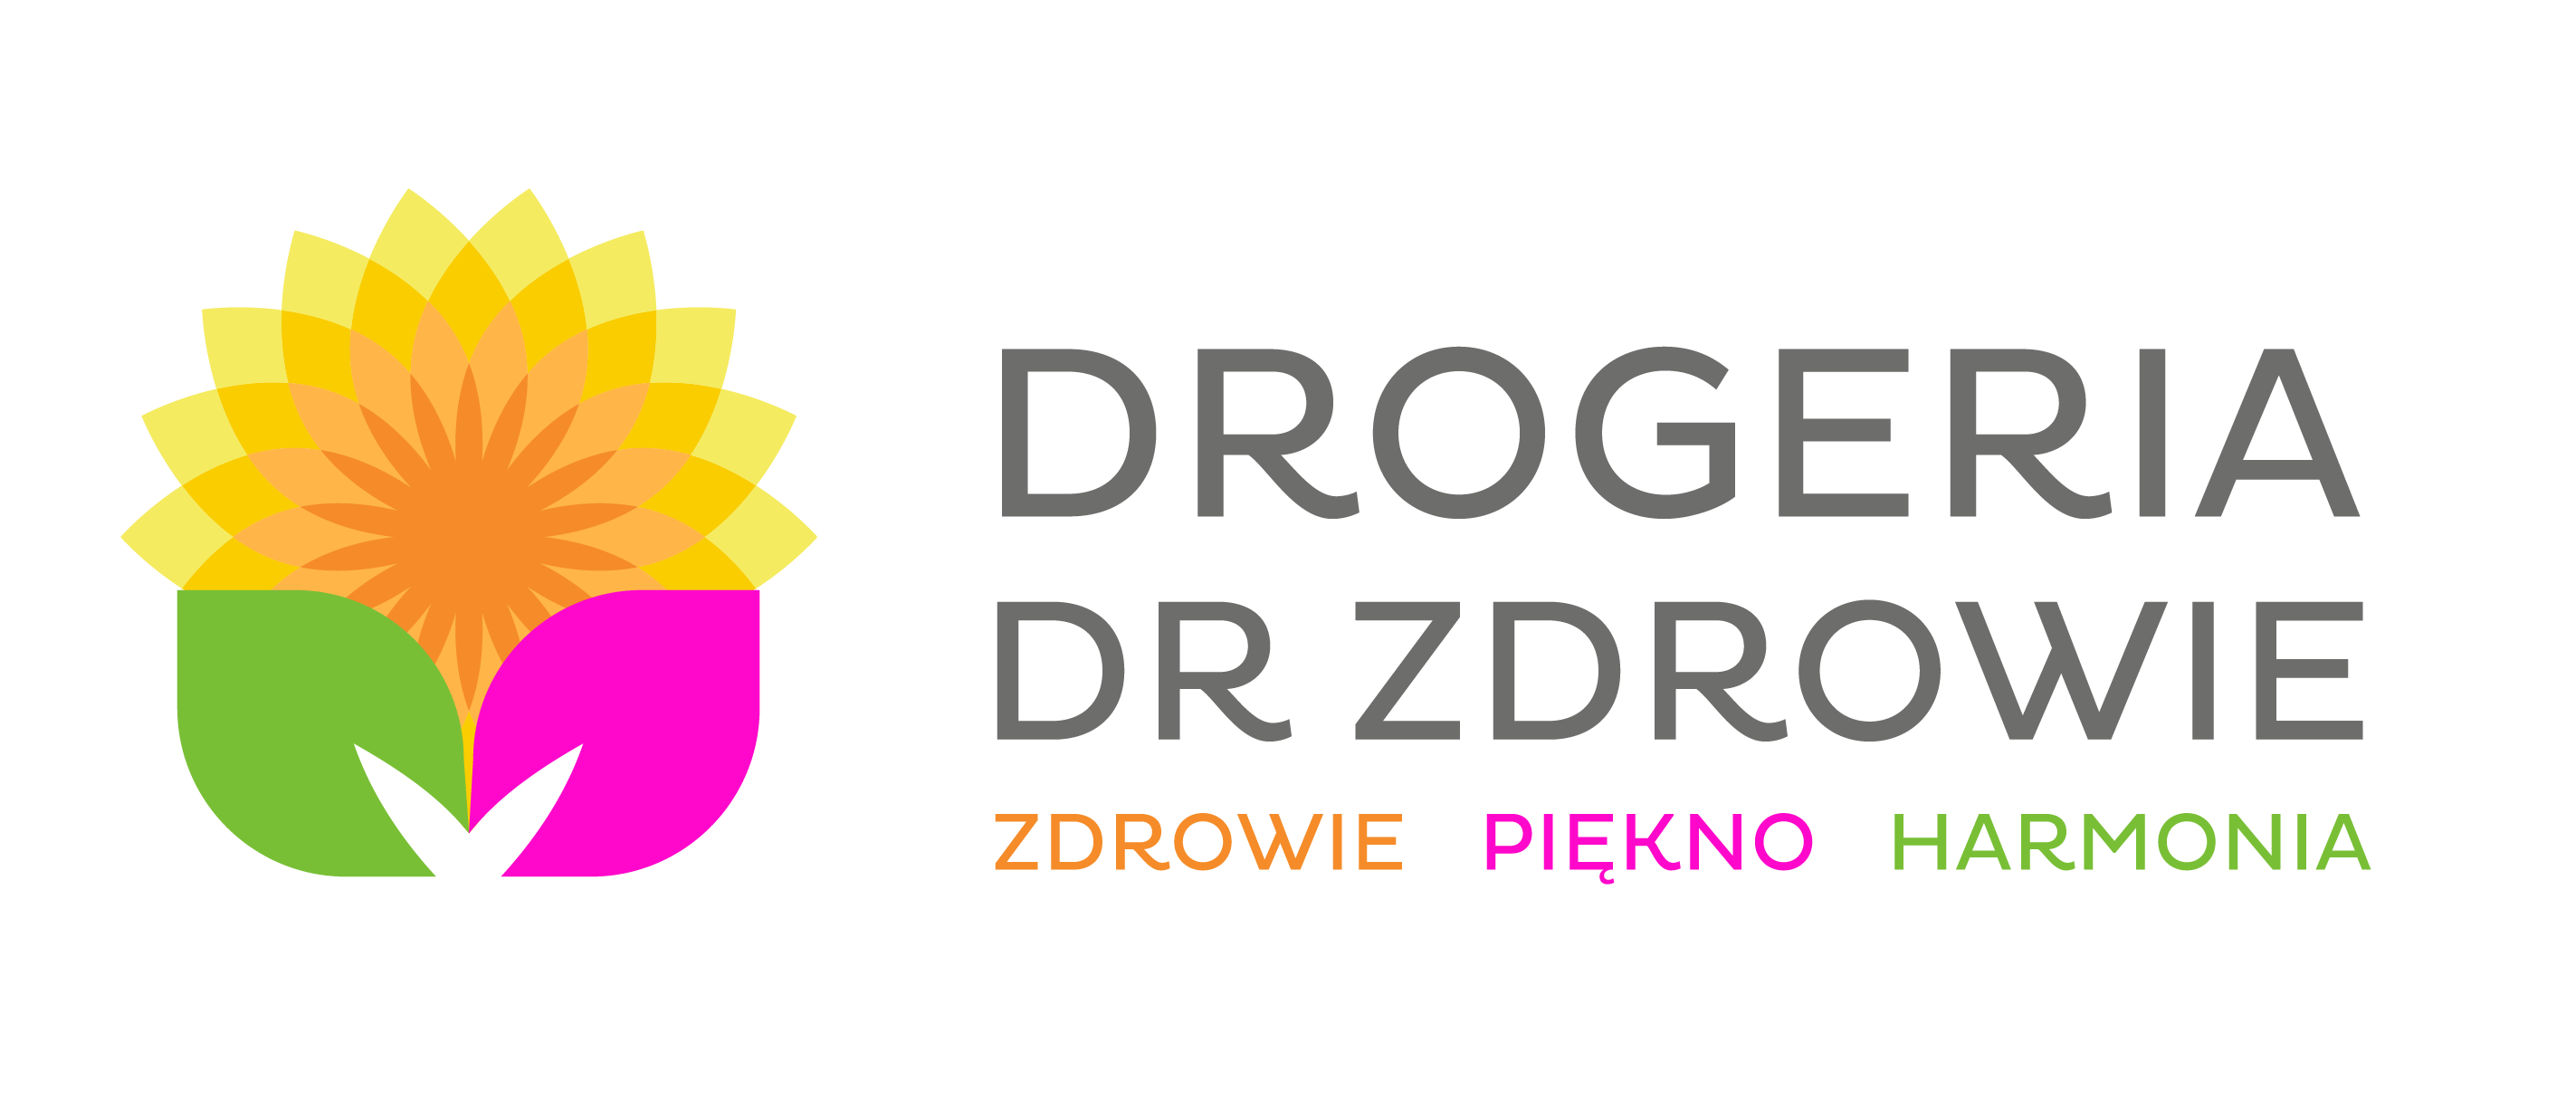 Drogeria Dr Zdrowie